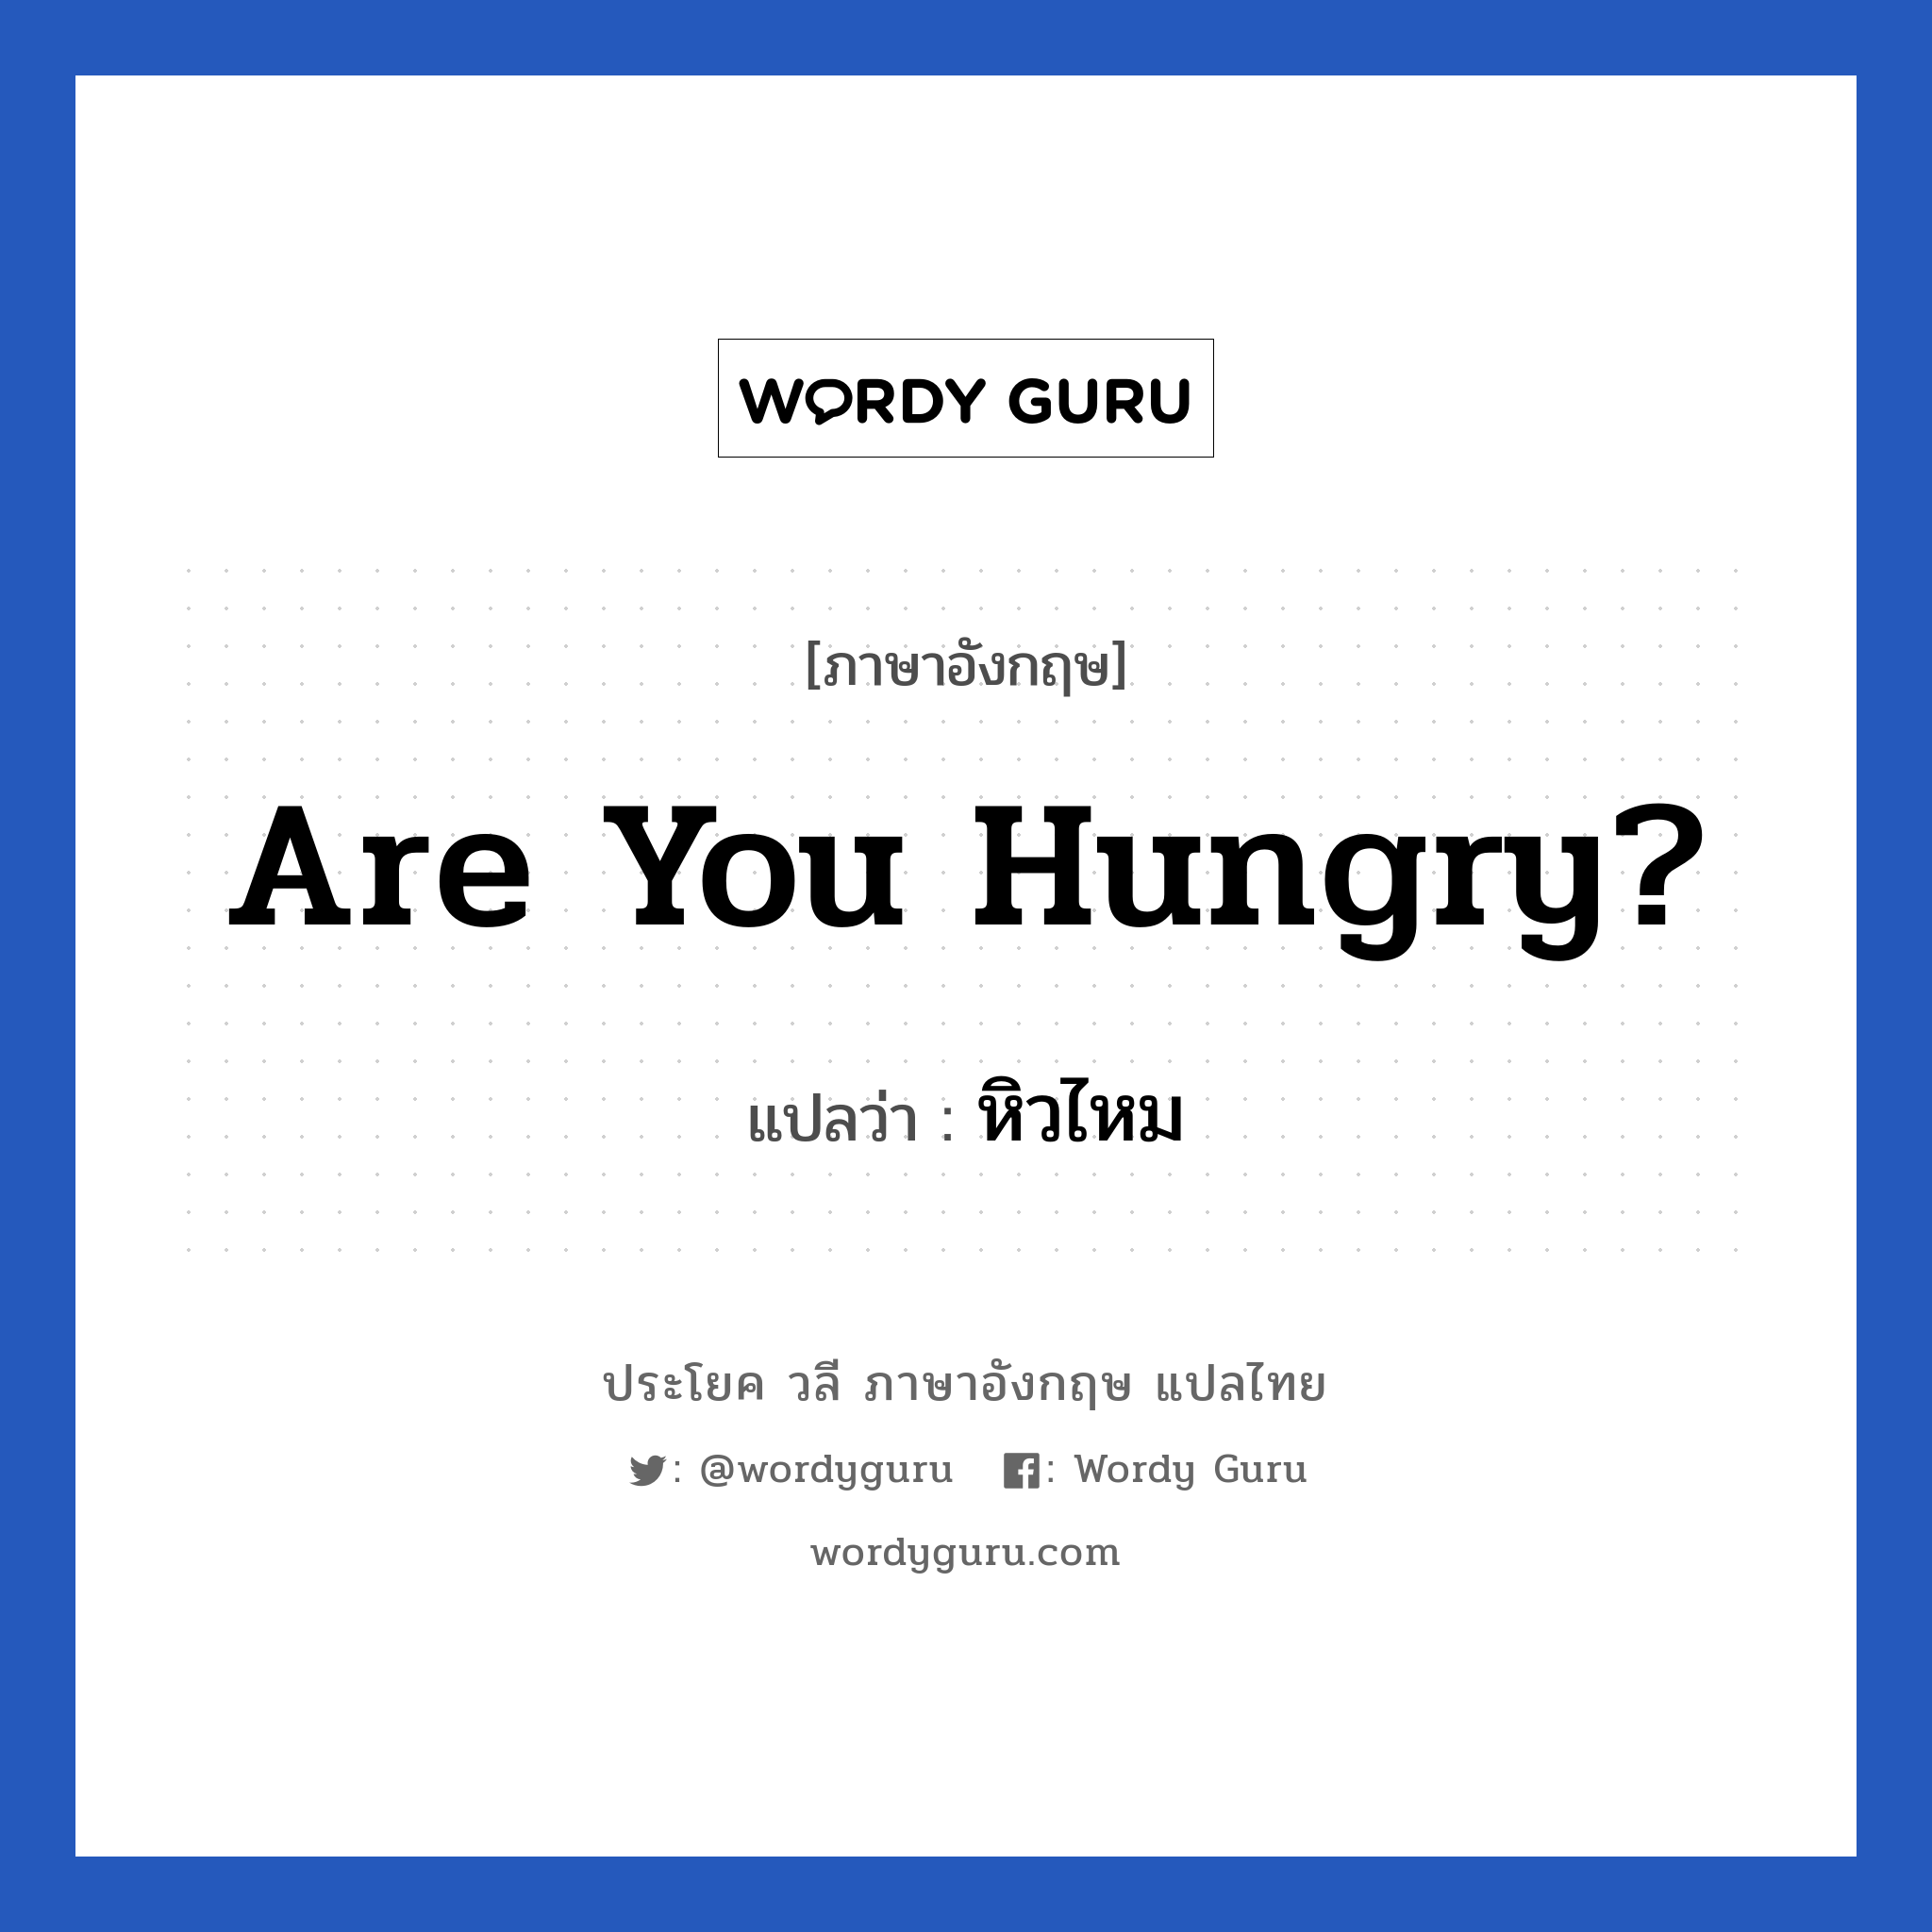 Are you hungry? แปลว่า?, วลีภาษาอังกฤษ Are you hungry? แปลว่า หิวไหม